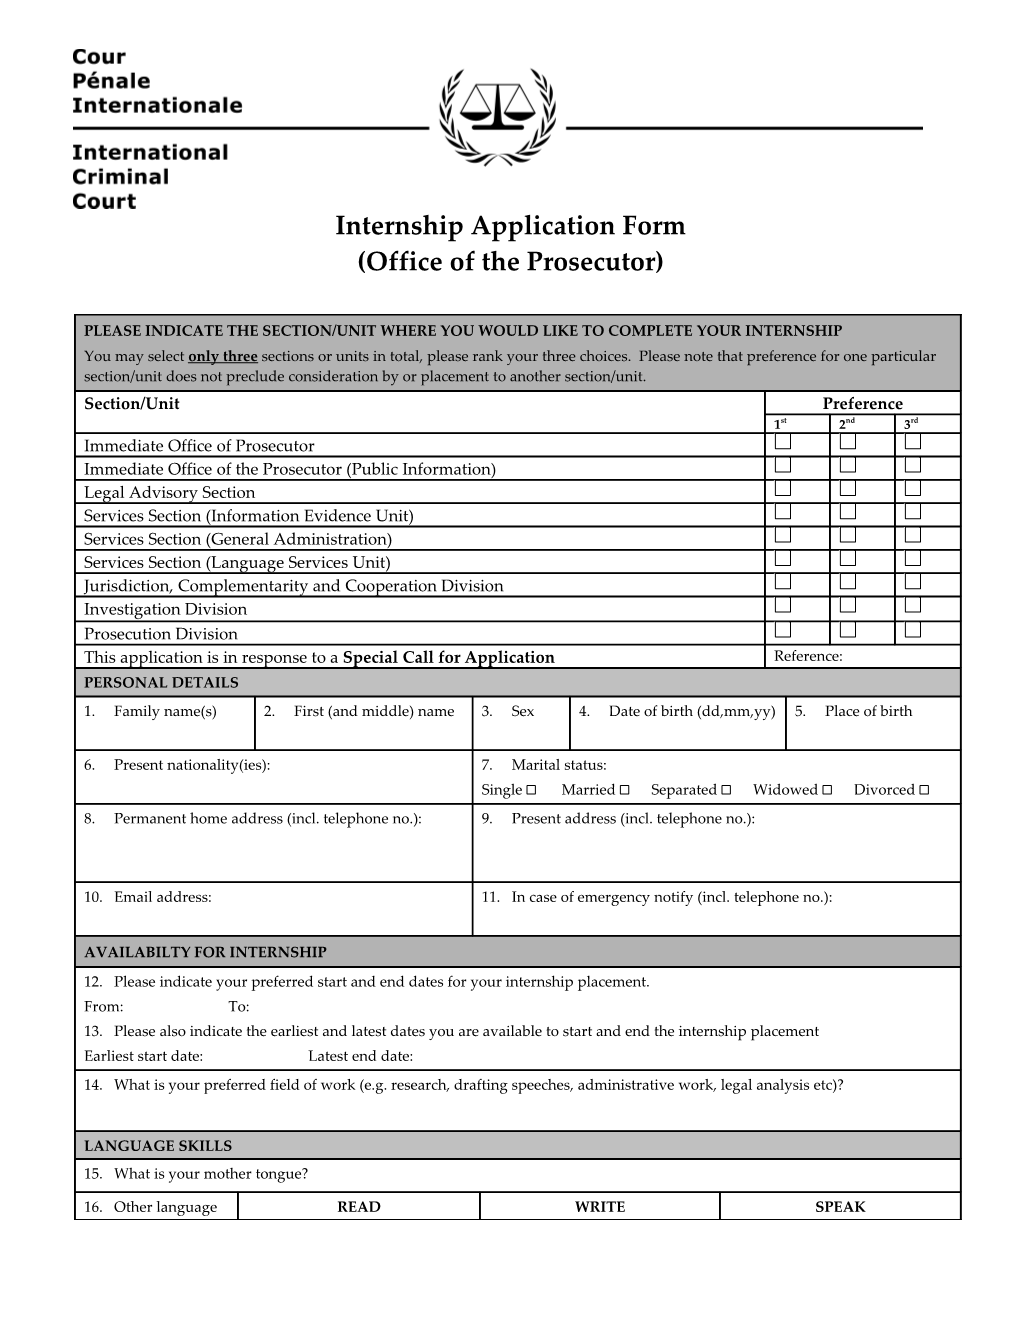 Internship Application Form s2